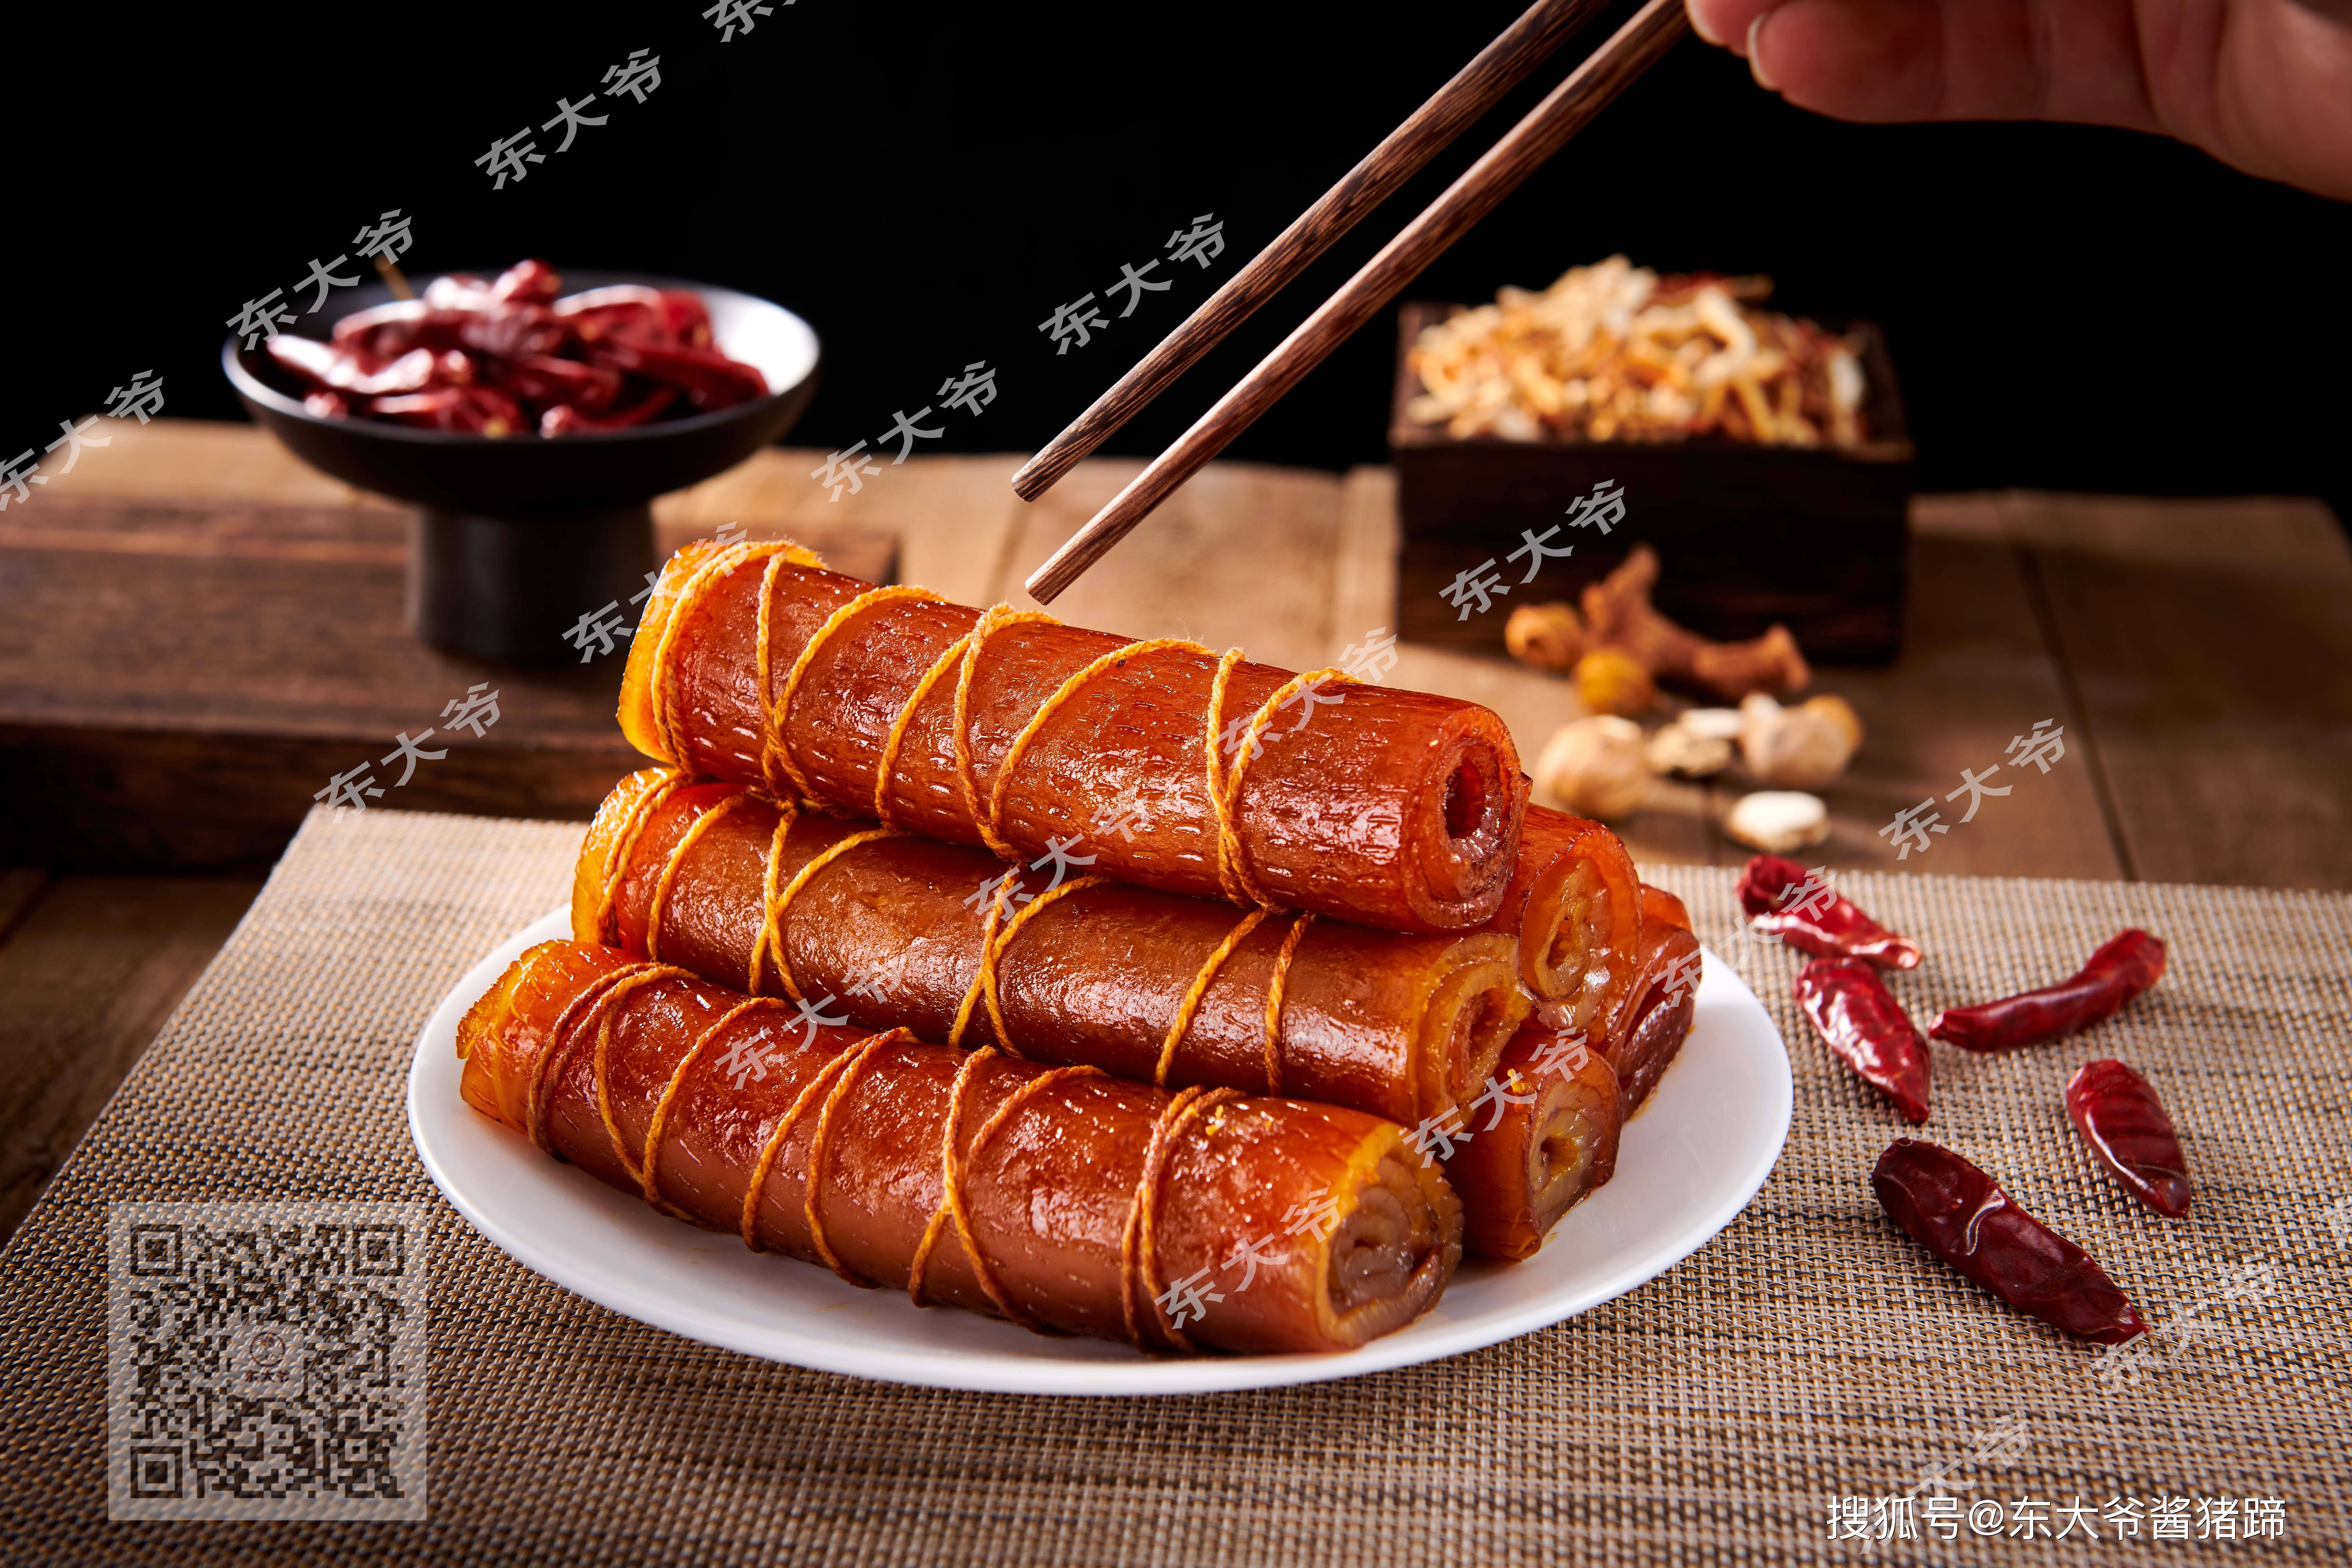 老北京:东大爷老北京酱猪蹄的猪皮卷适合多人食用